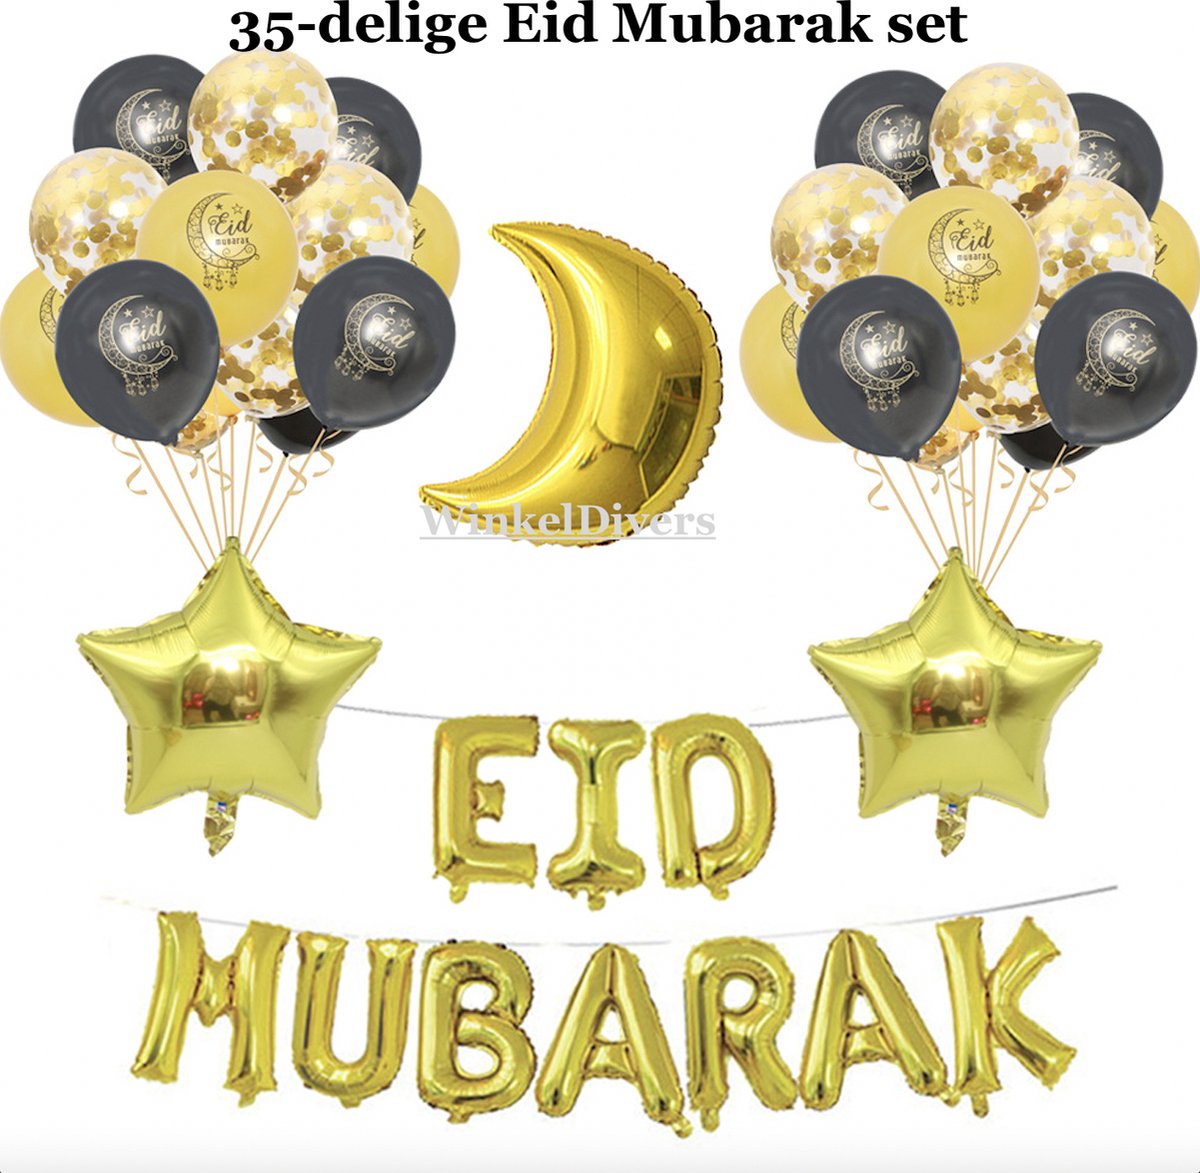 WD - Eid mubarak - 35delige feestpakket - versiering - latex ballonnenset - decoratieset - decoratie - feest - islam -